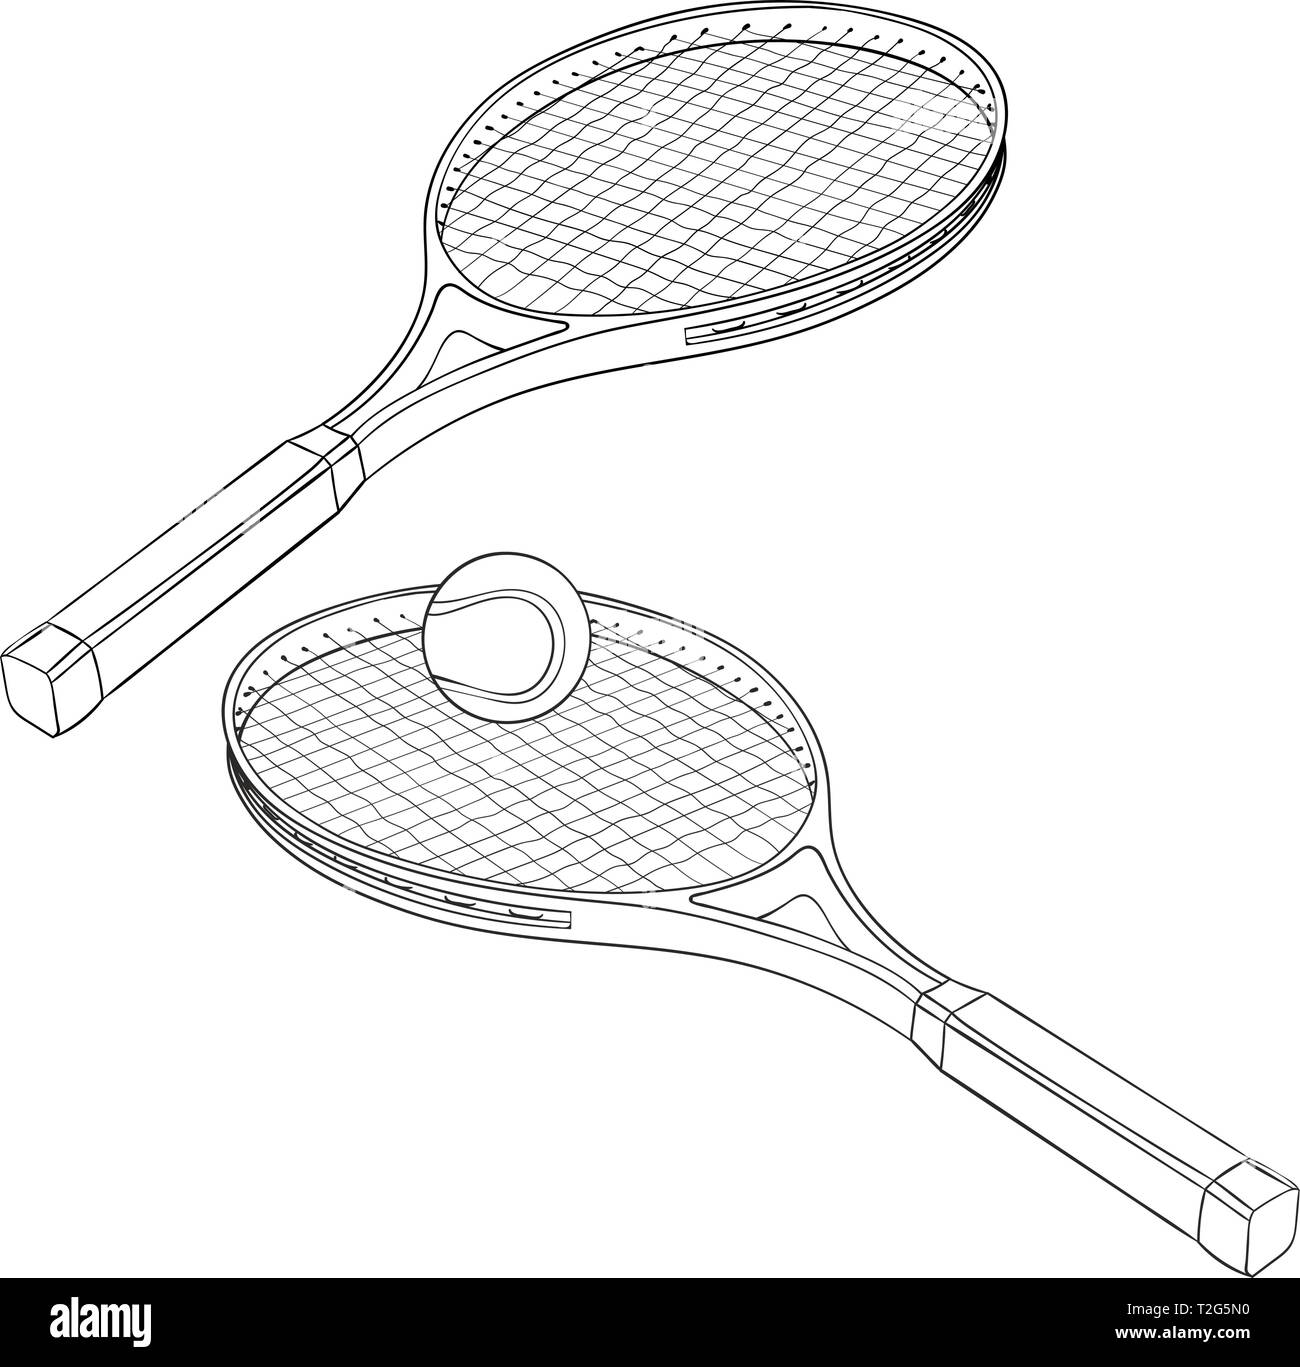 Les raquettes de tennis. Croquis dessinés à la main. Vector illustration isolé sur fond blanc Illustration de Vecteur